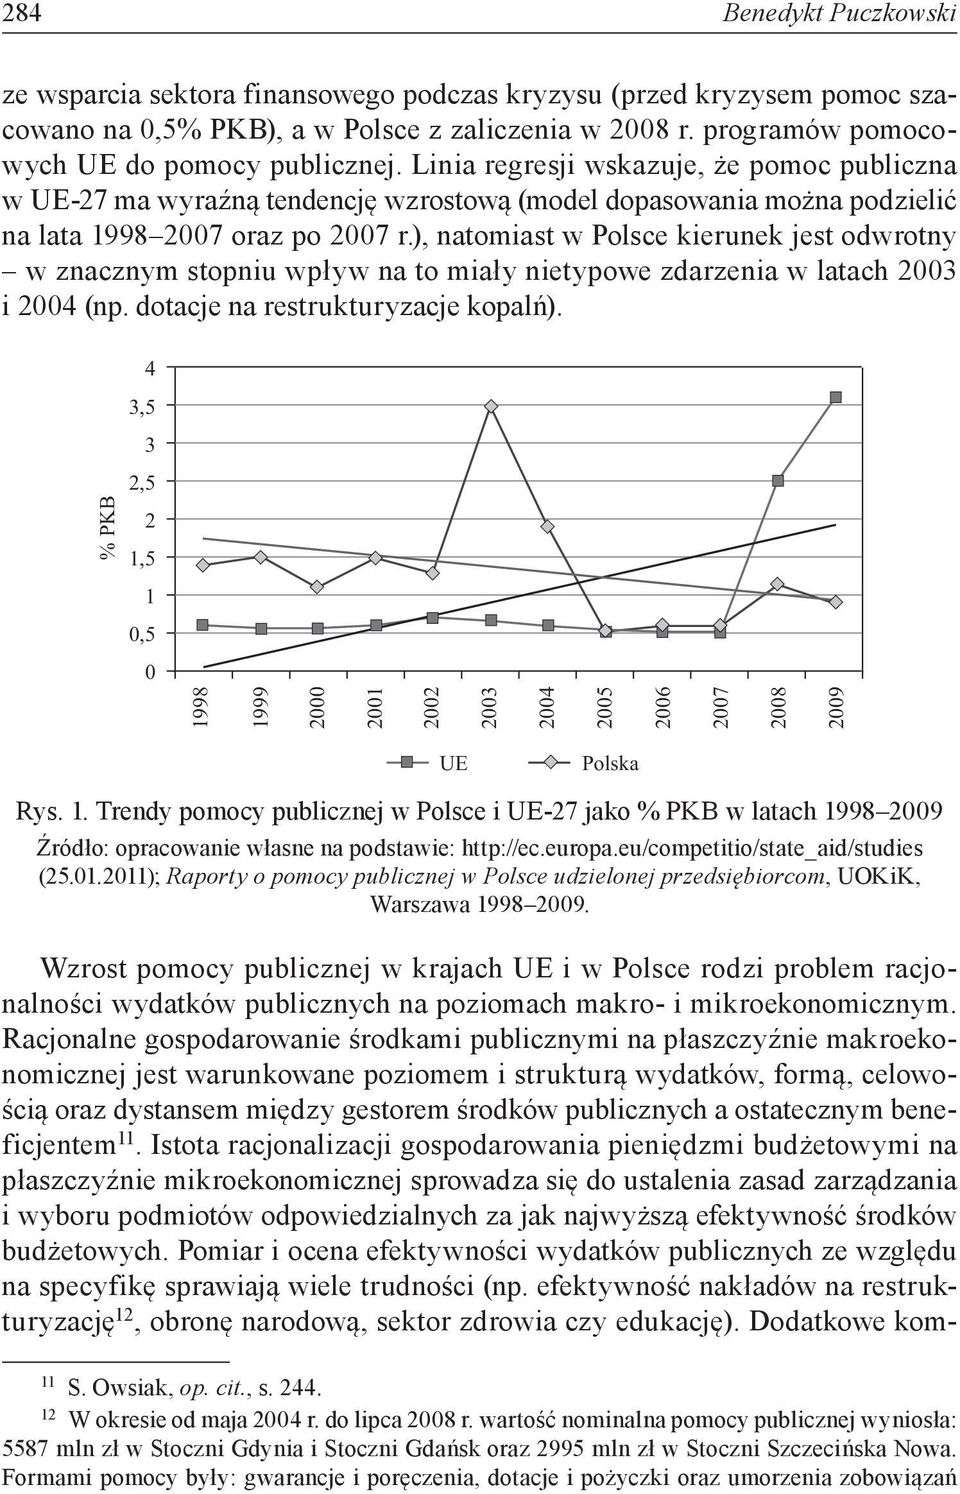 ), atomiast w Polsce kieruek jest odwroty w zaczym stopiu wpływ a to miały ietypowe zdarzeia w latach 2003 i 2004 (p. dotacje a restrukturyzacje kopalń).